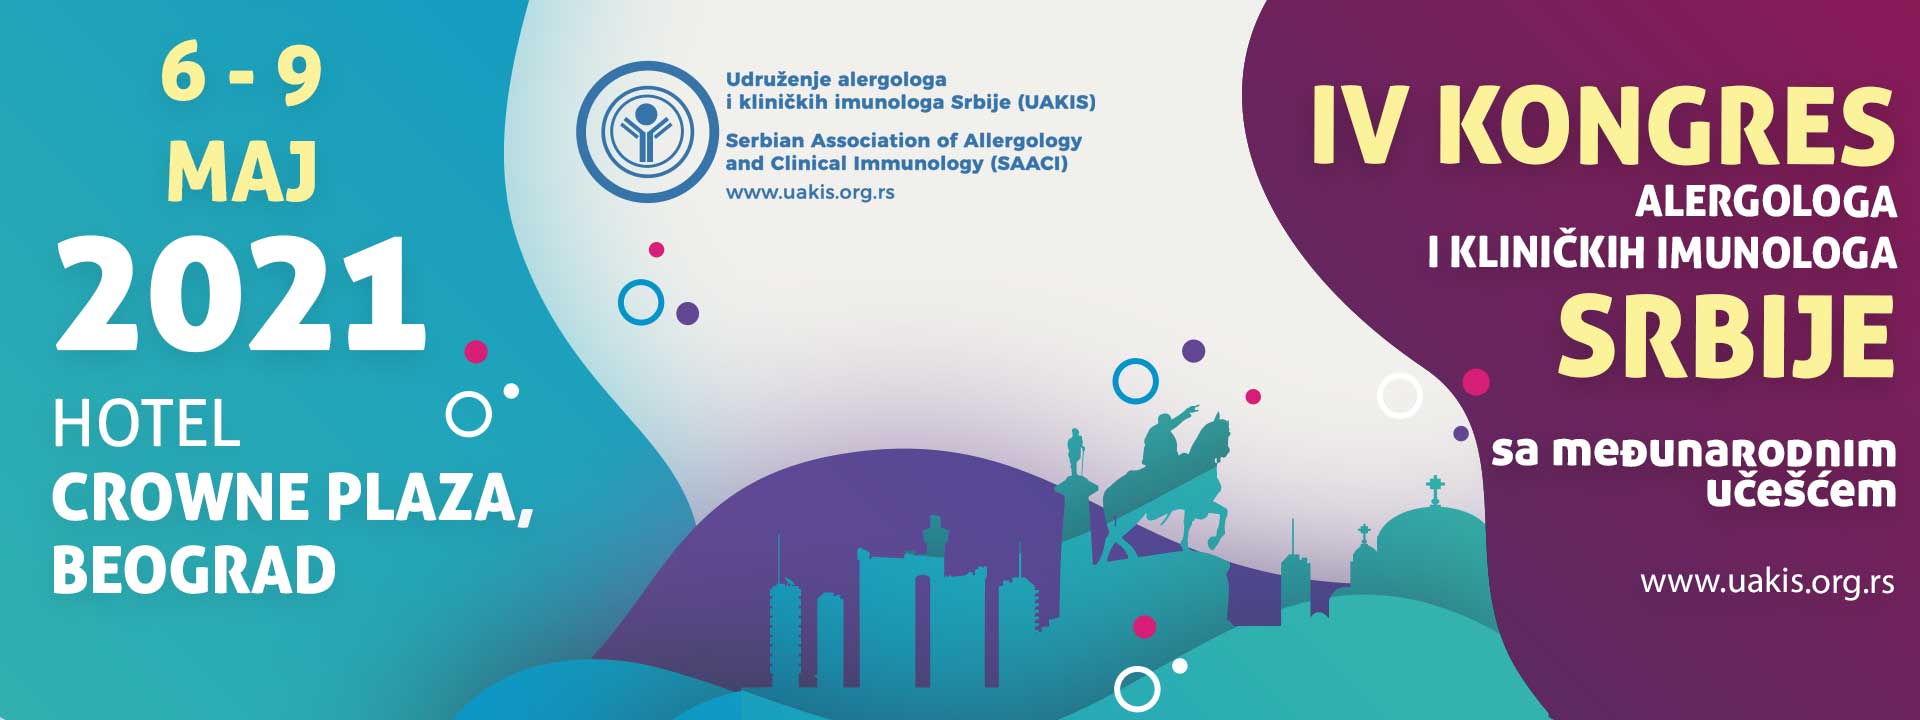 IV Kongres alergologa i kliničkih imunologa Srbije Beograd 2021